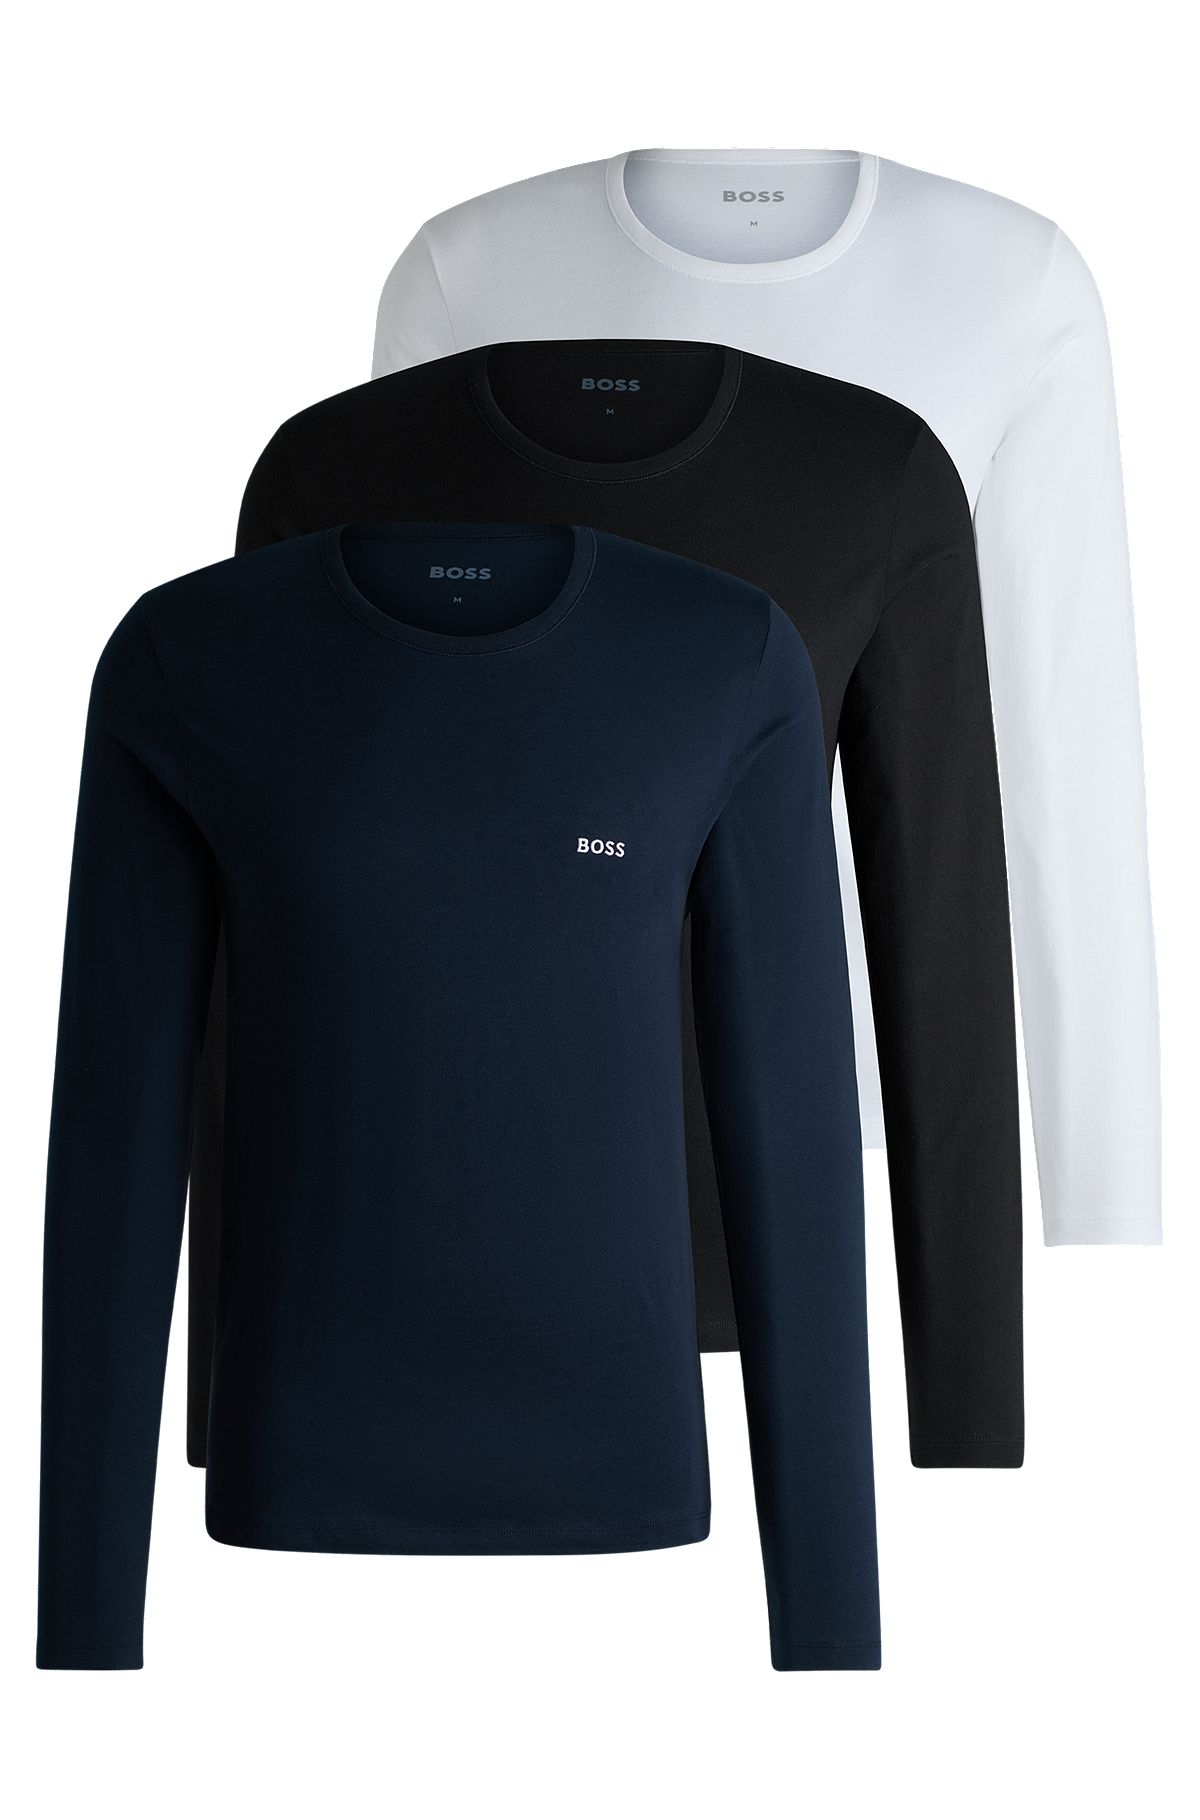 Pakke med tre undertrøje-T-shirts i bomuld og med logo, Sort/hvid/blå